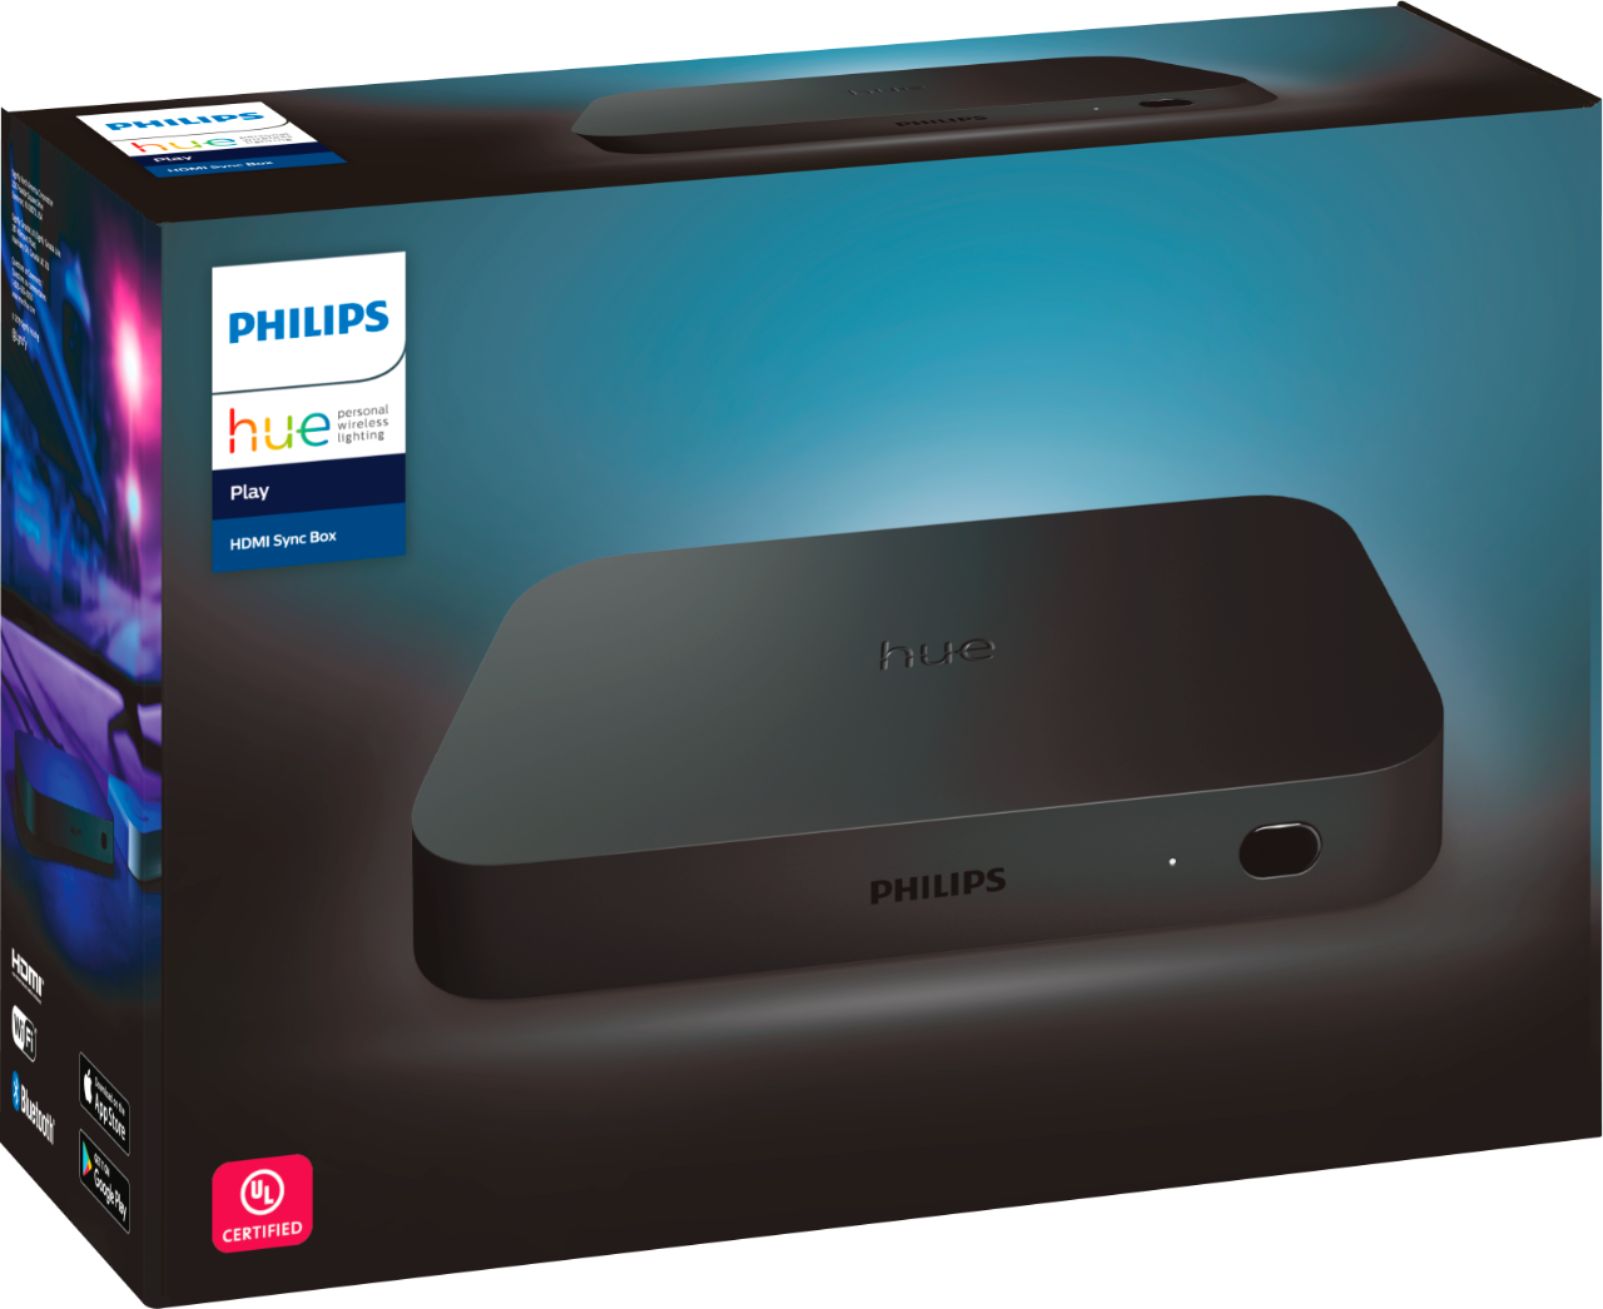 Philips - Hue Play HDMI Sync Box - Black $229.99 + free shipping